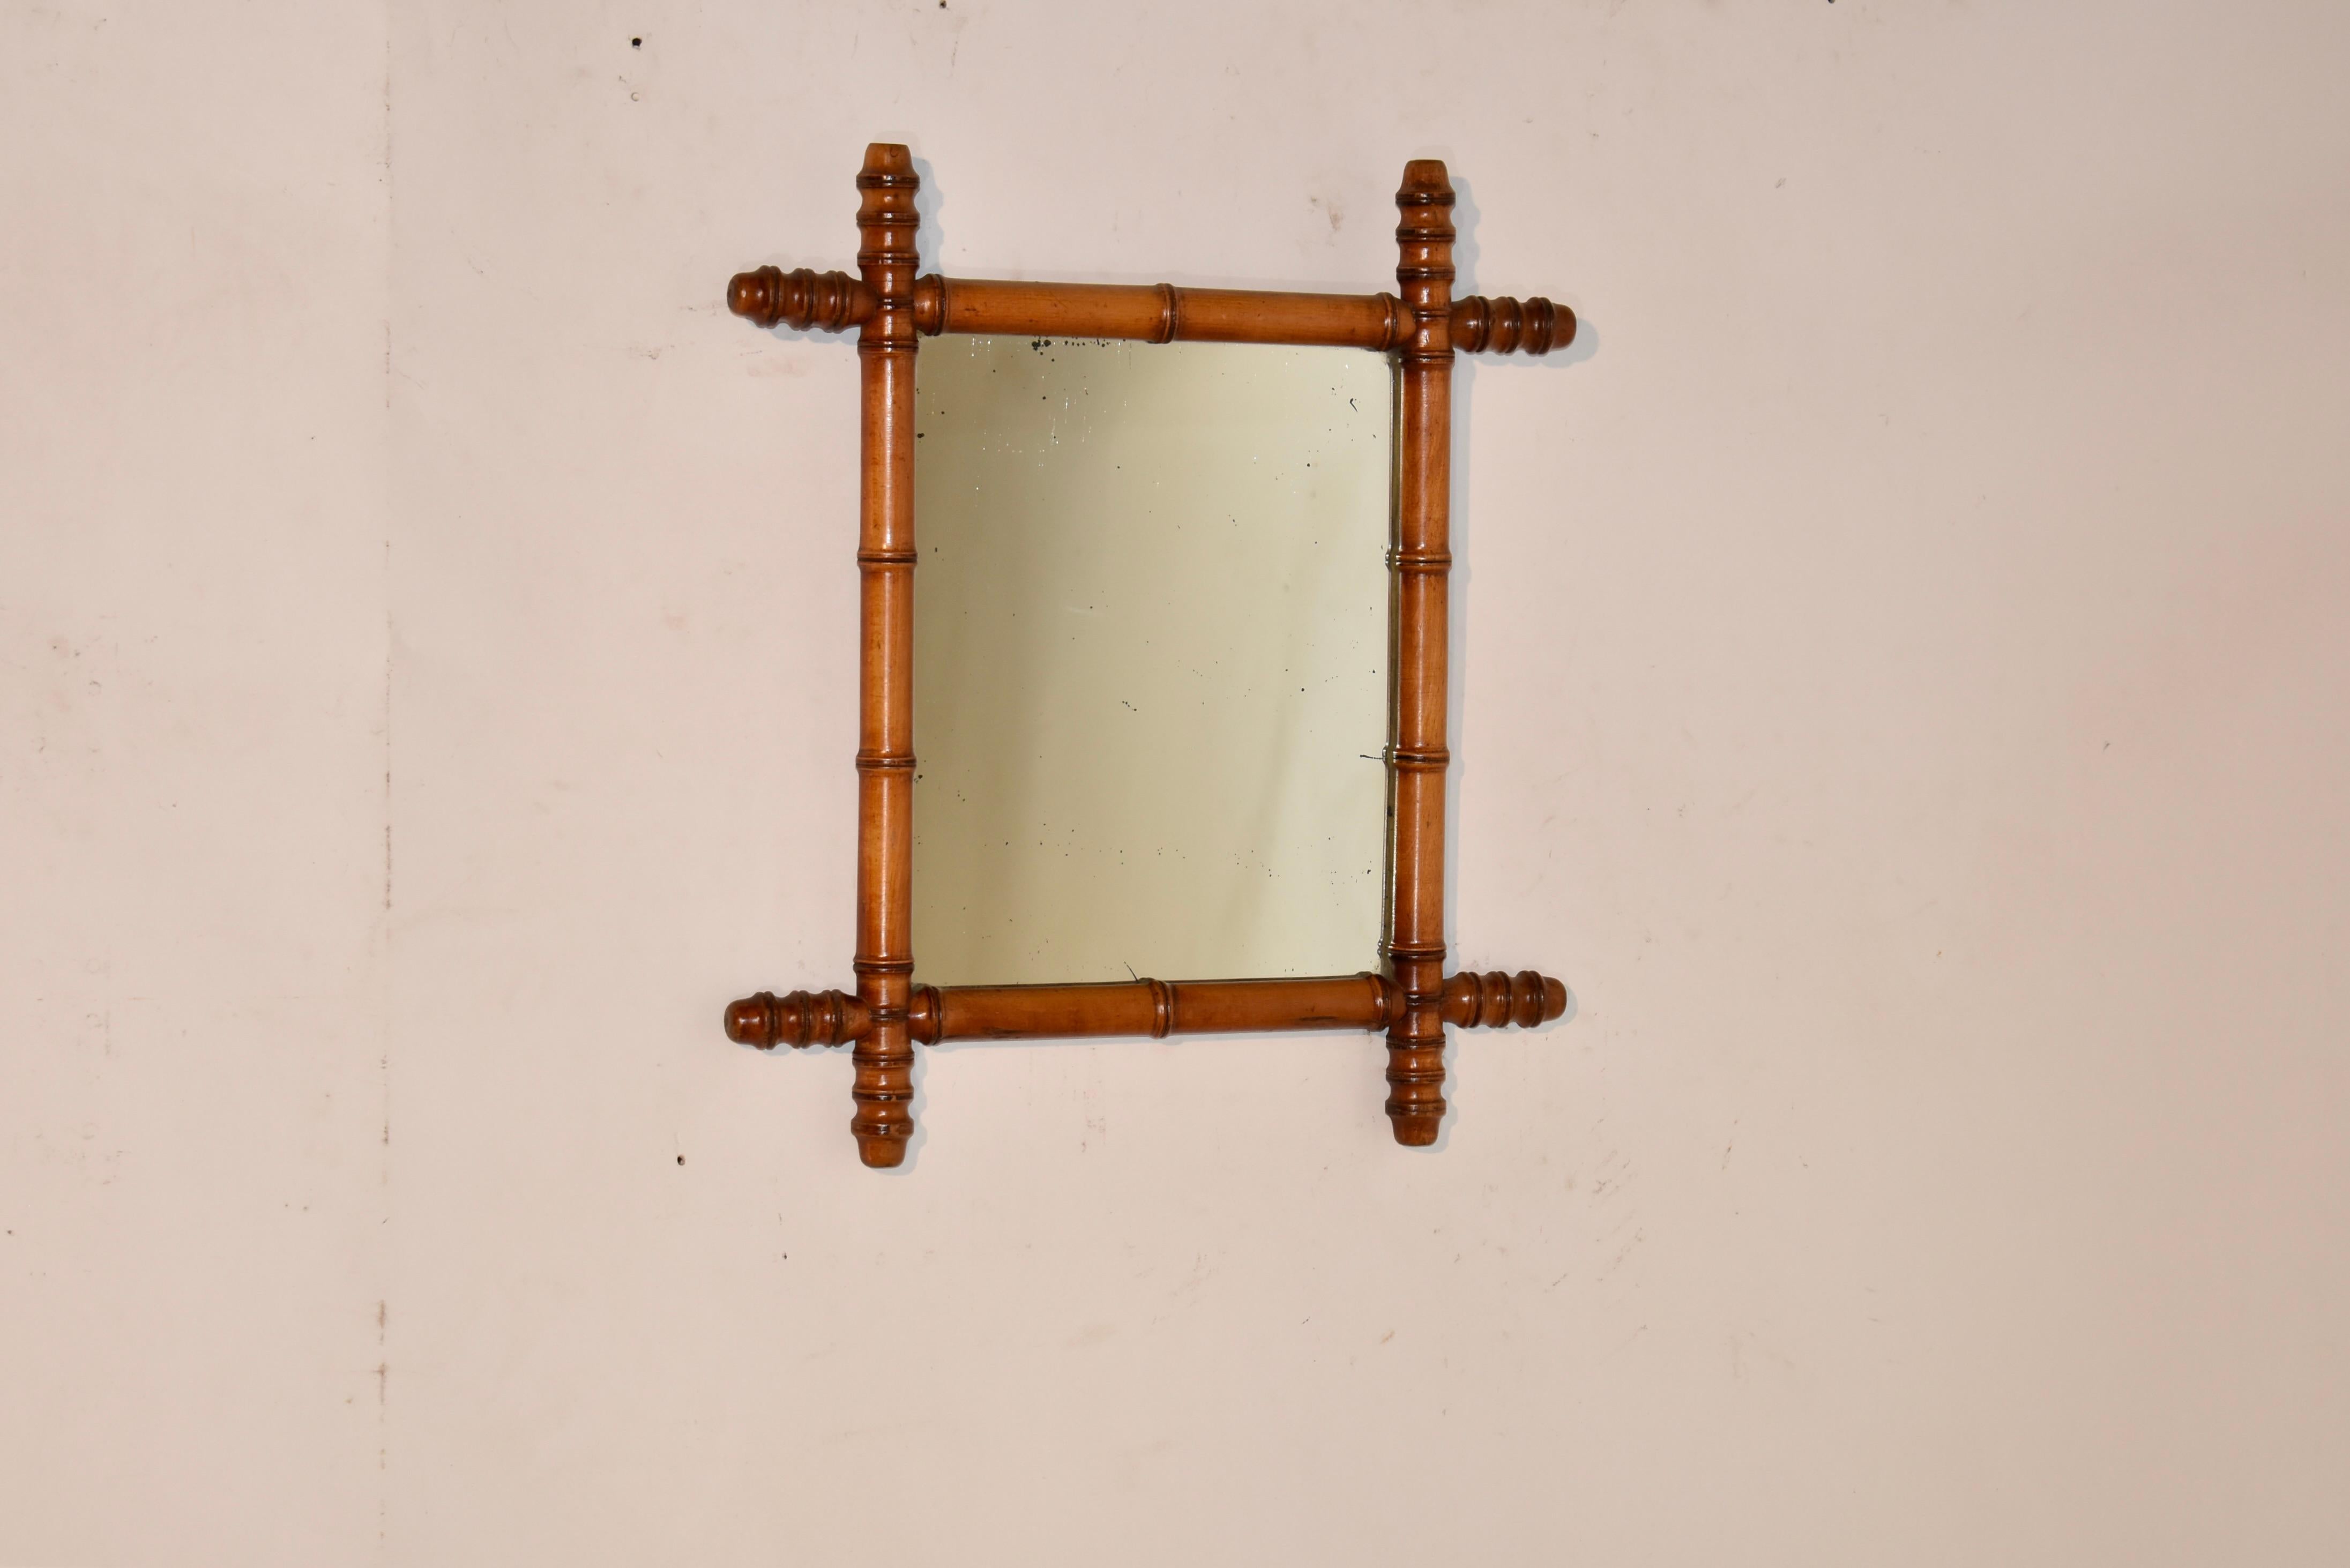 Französischer Spiegel aus Kirsche mit Bambusimitat aus dem späten 19. Jahrhundert.  Der Rahmen ist so gedreht, dass er Bambus nachahmt, und umgibt einen scheinbar originalen Spiegel.  Diese sehen großartig aus, besonders in einer Gruppe.